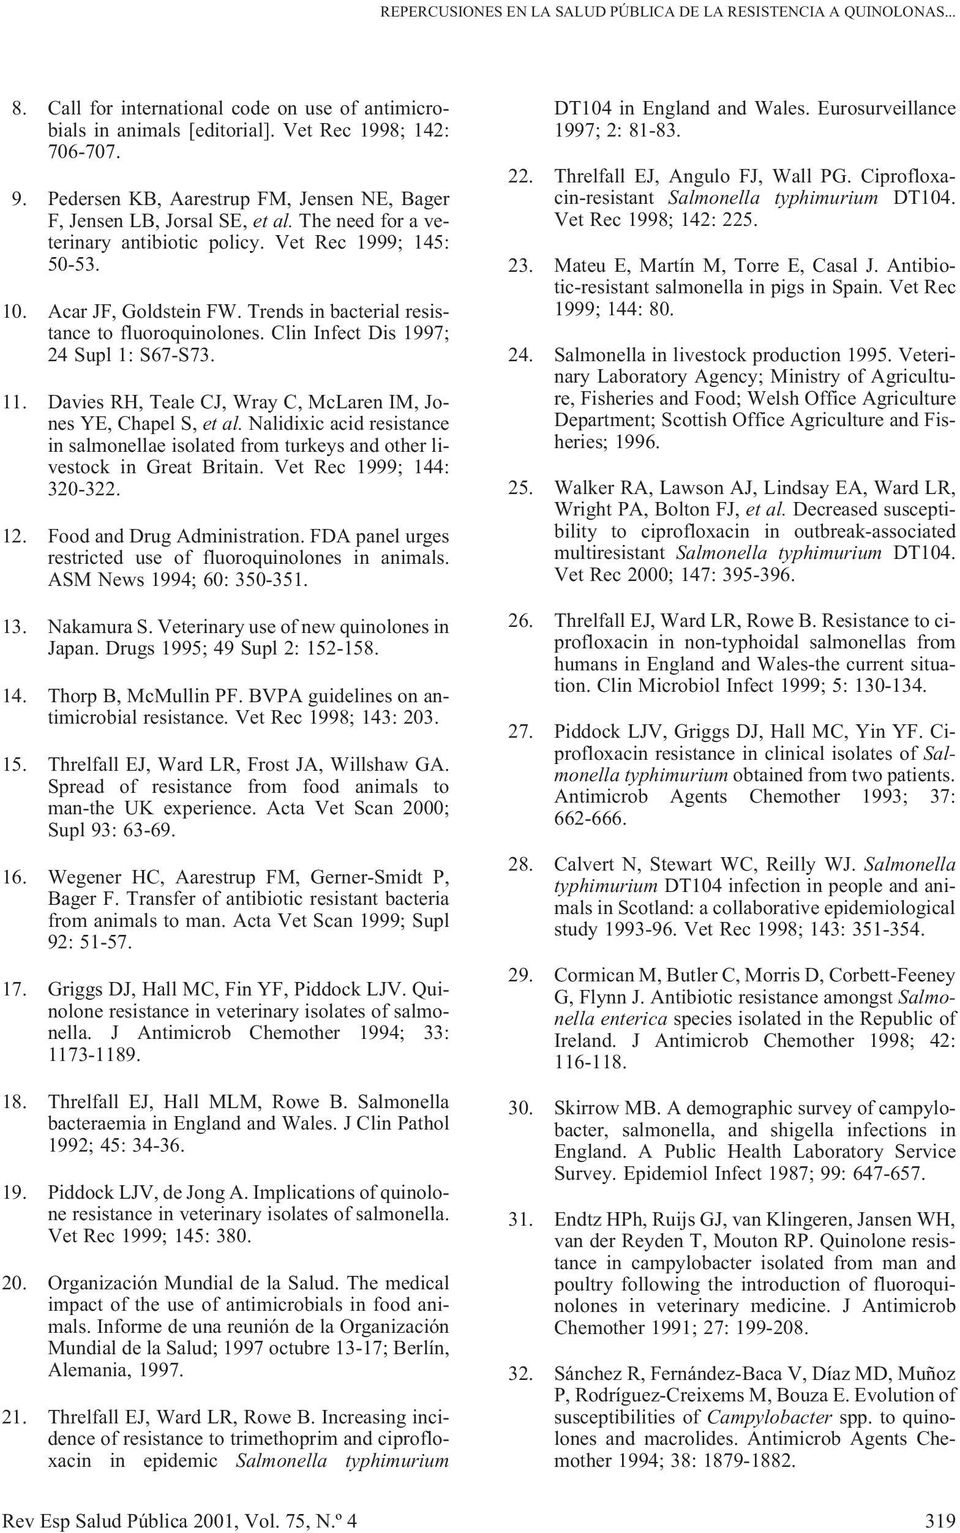 Trends in bacterial resistance to fluoroquinolones. Clin Infect Dis 1997; 24 Supl 1: S67-S73. 11. Davies RH, Teale CJ, Wray C, McLaren IM, Jones YE, Chapel S, et al.